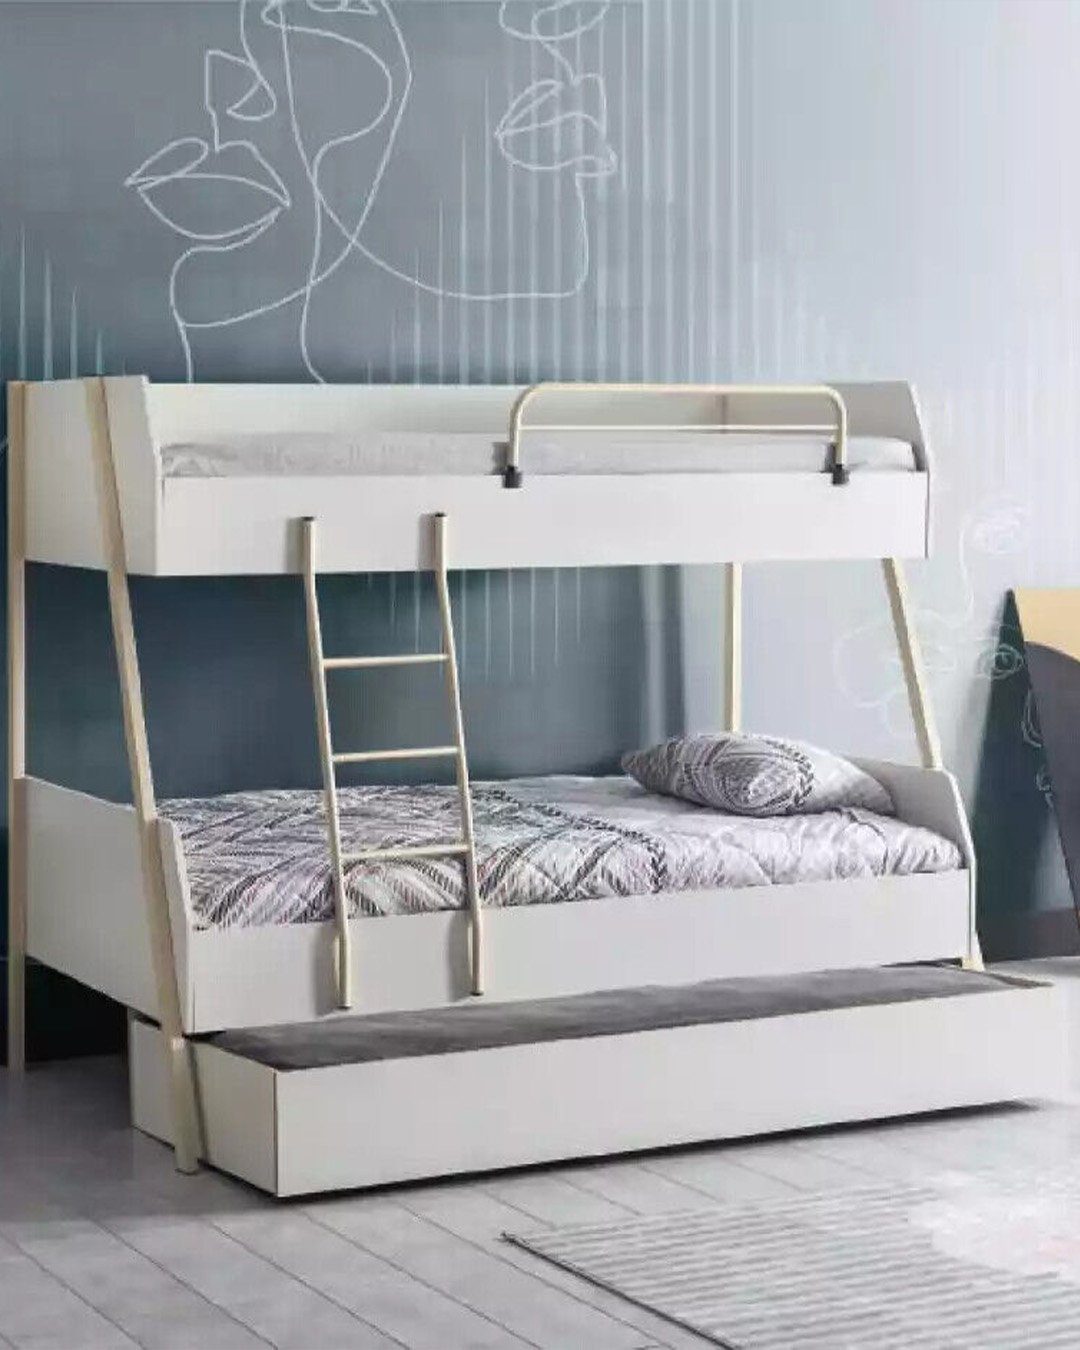 JVmoebel Etagenbett, Jugendbett Weiß Kinderbett Design Modernes Bett Kinderzimmer